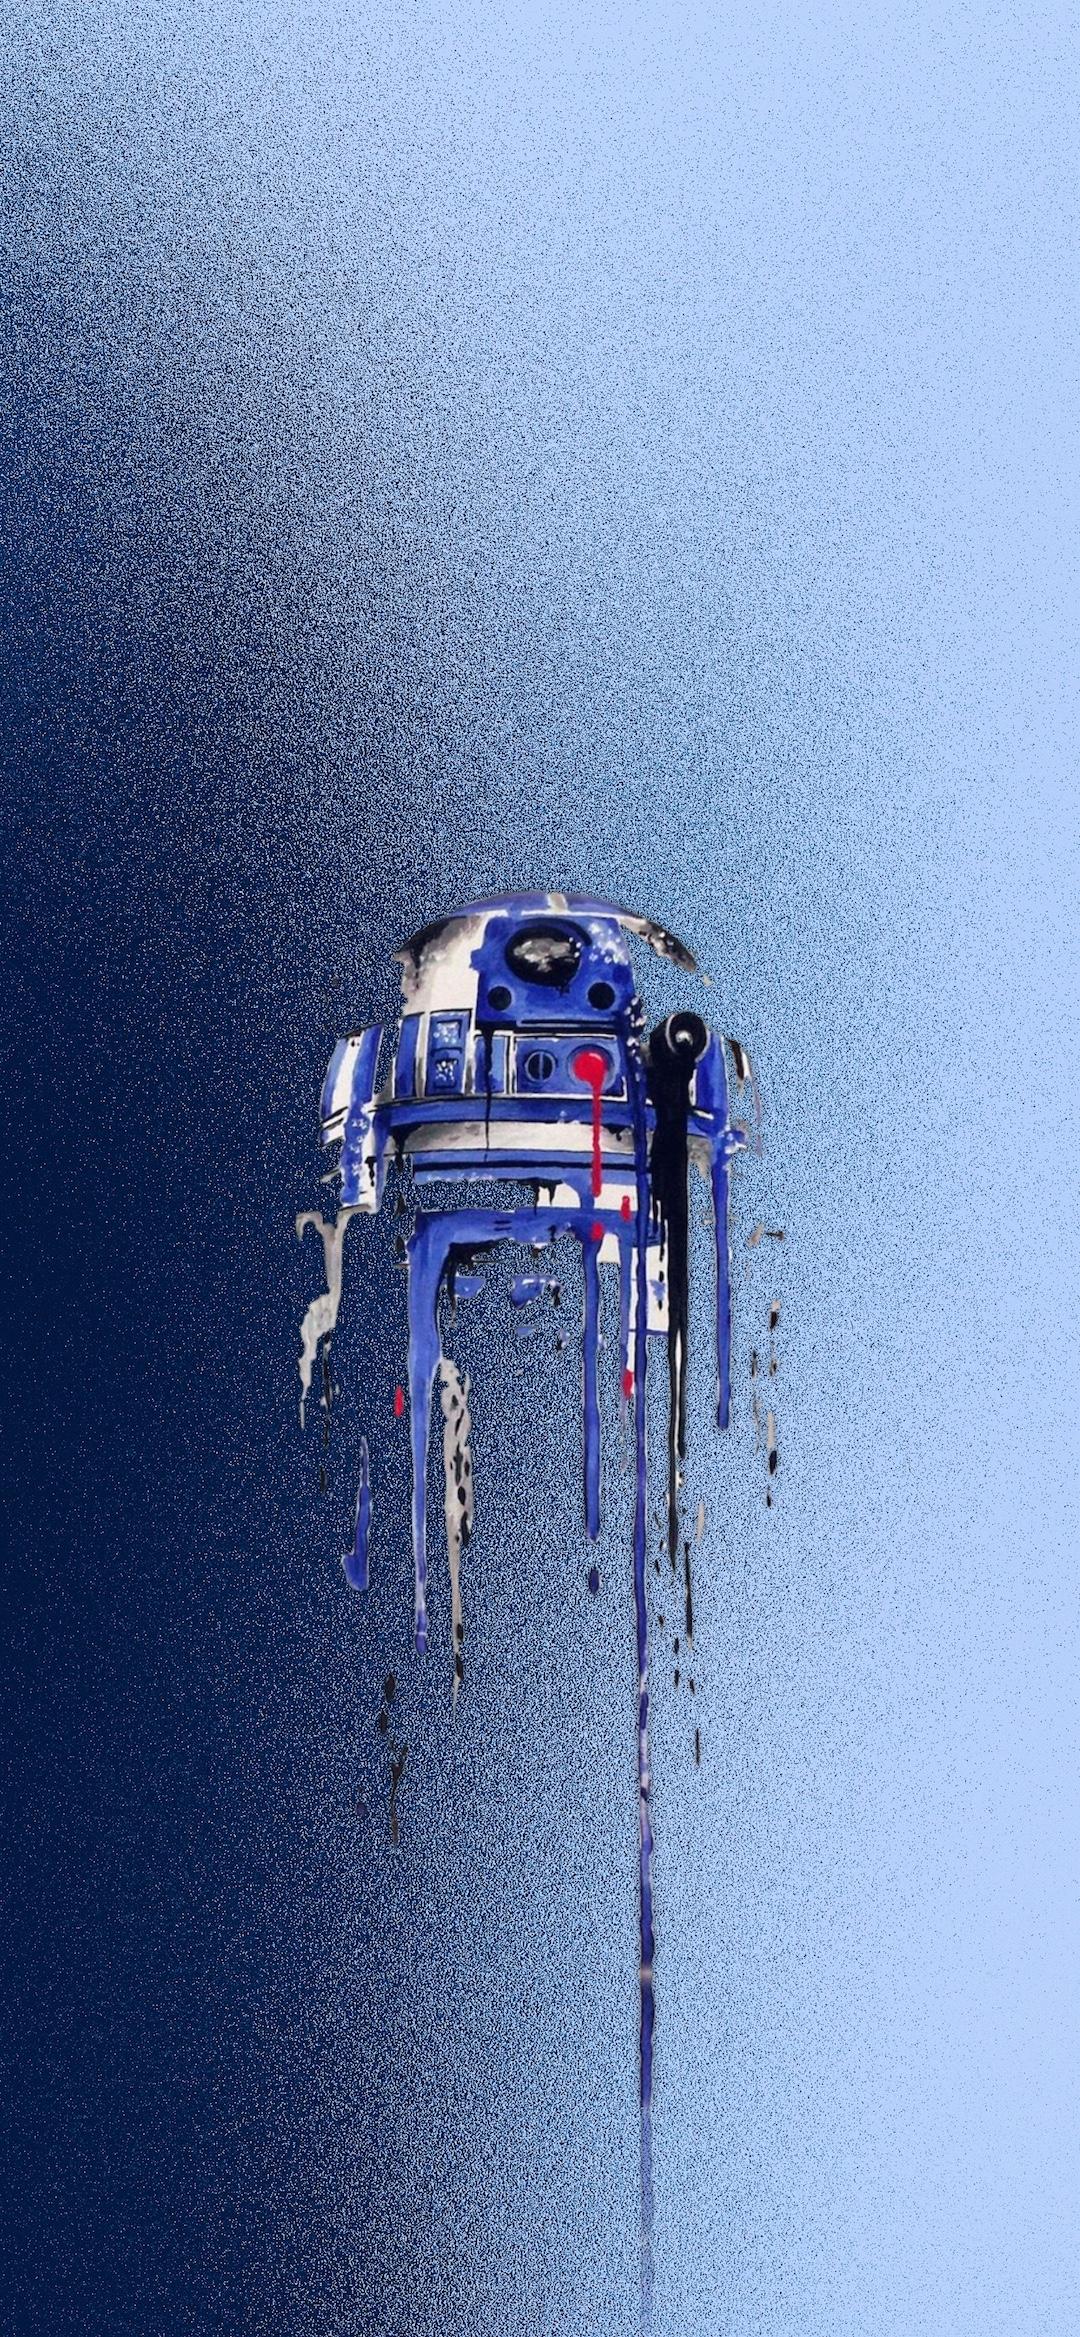 Star Wars Wallpaper Iphone Xs Max